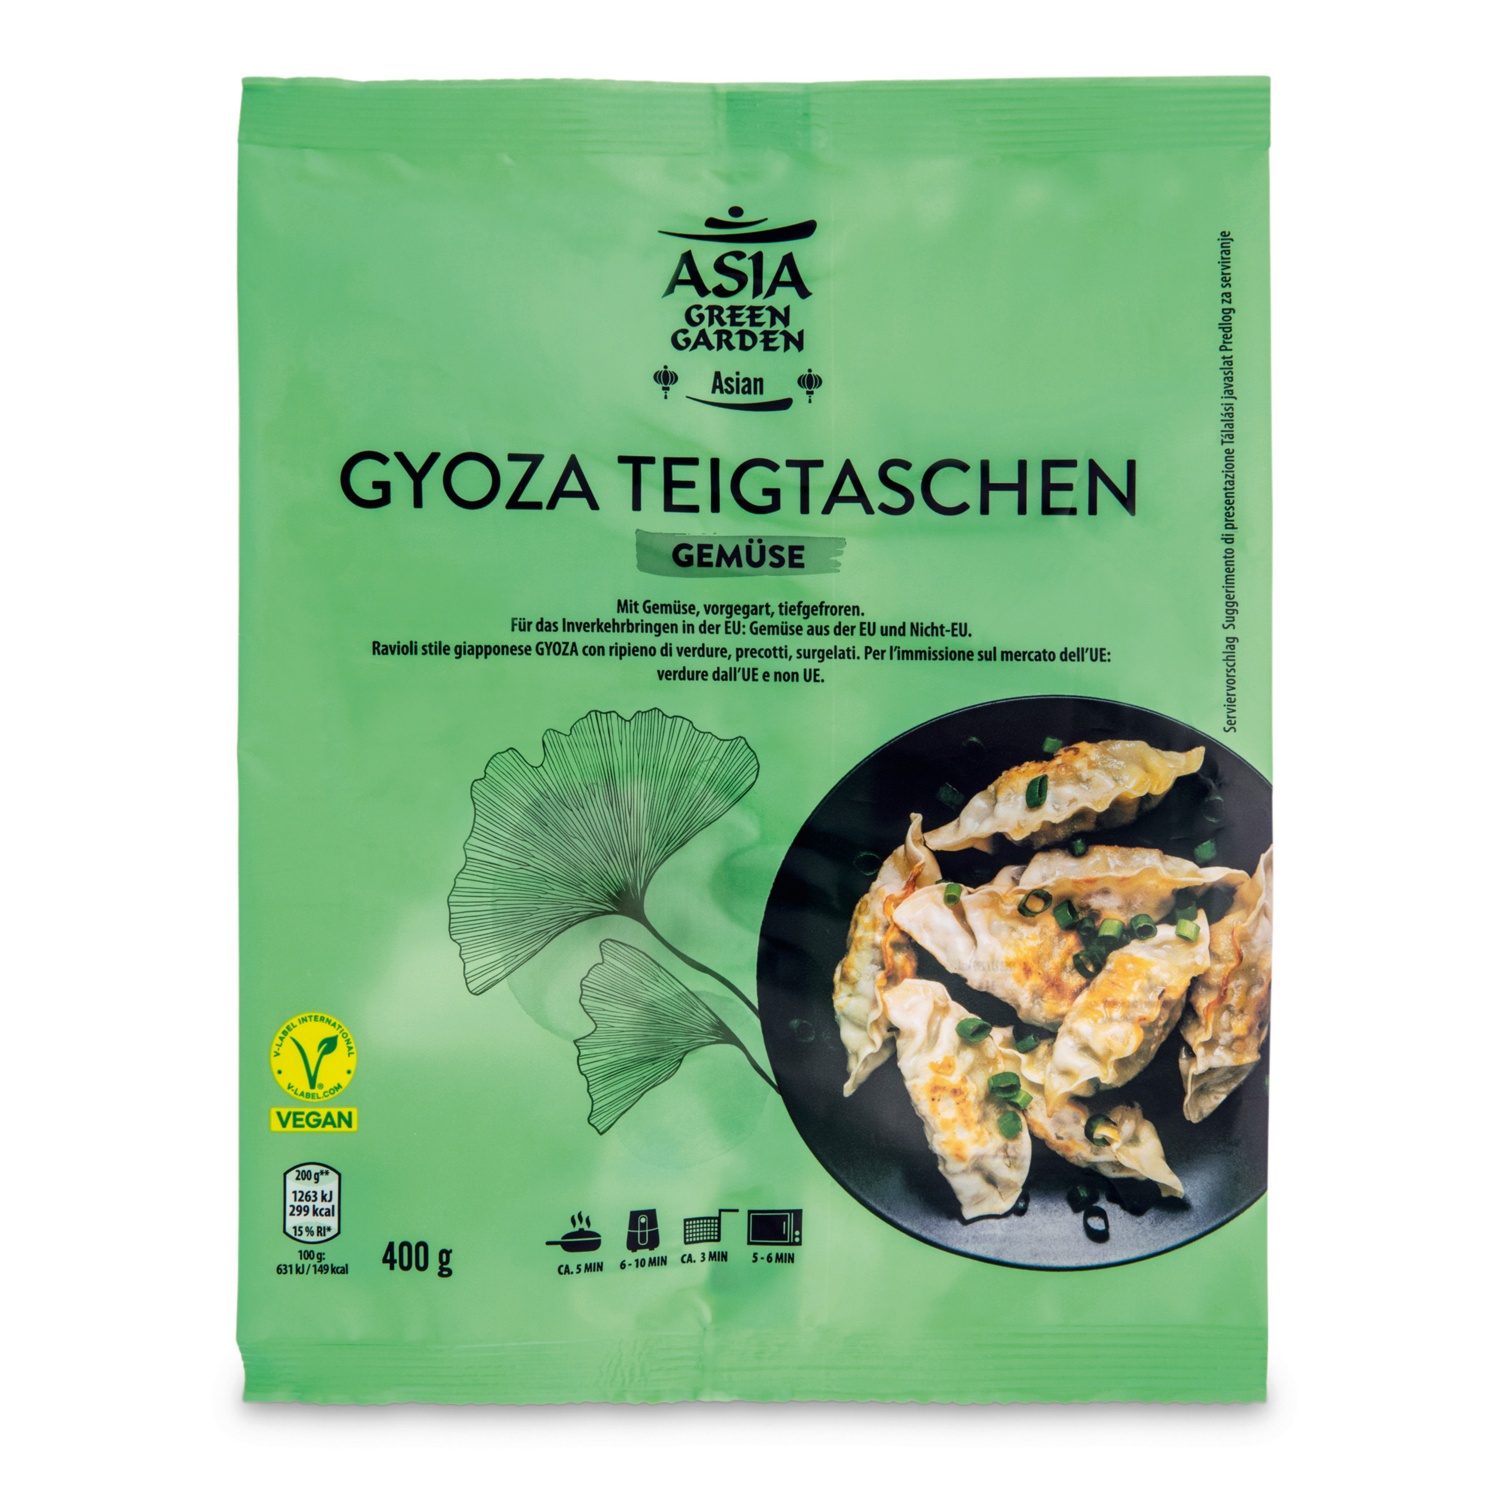 ASIA GREEN GARDEN Gyoza Teigtaschen, Gemüse